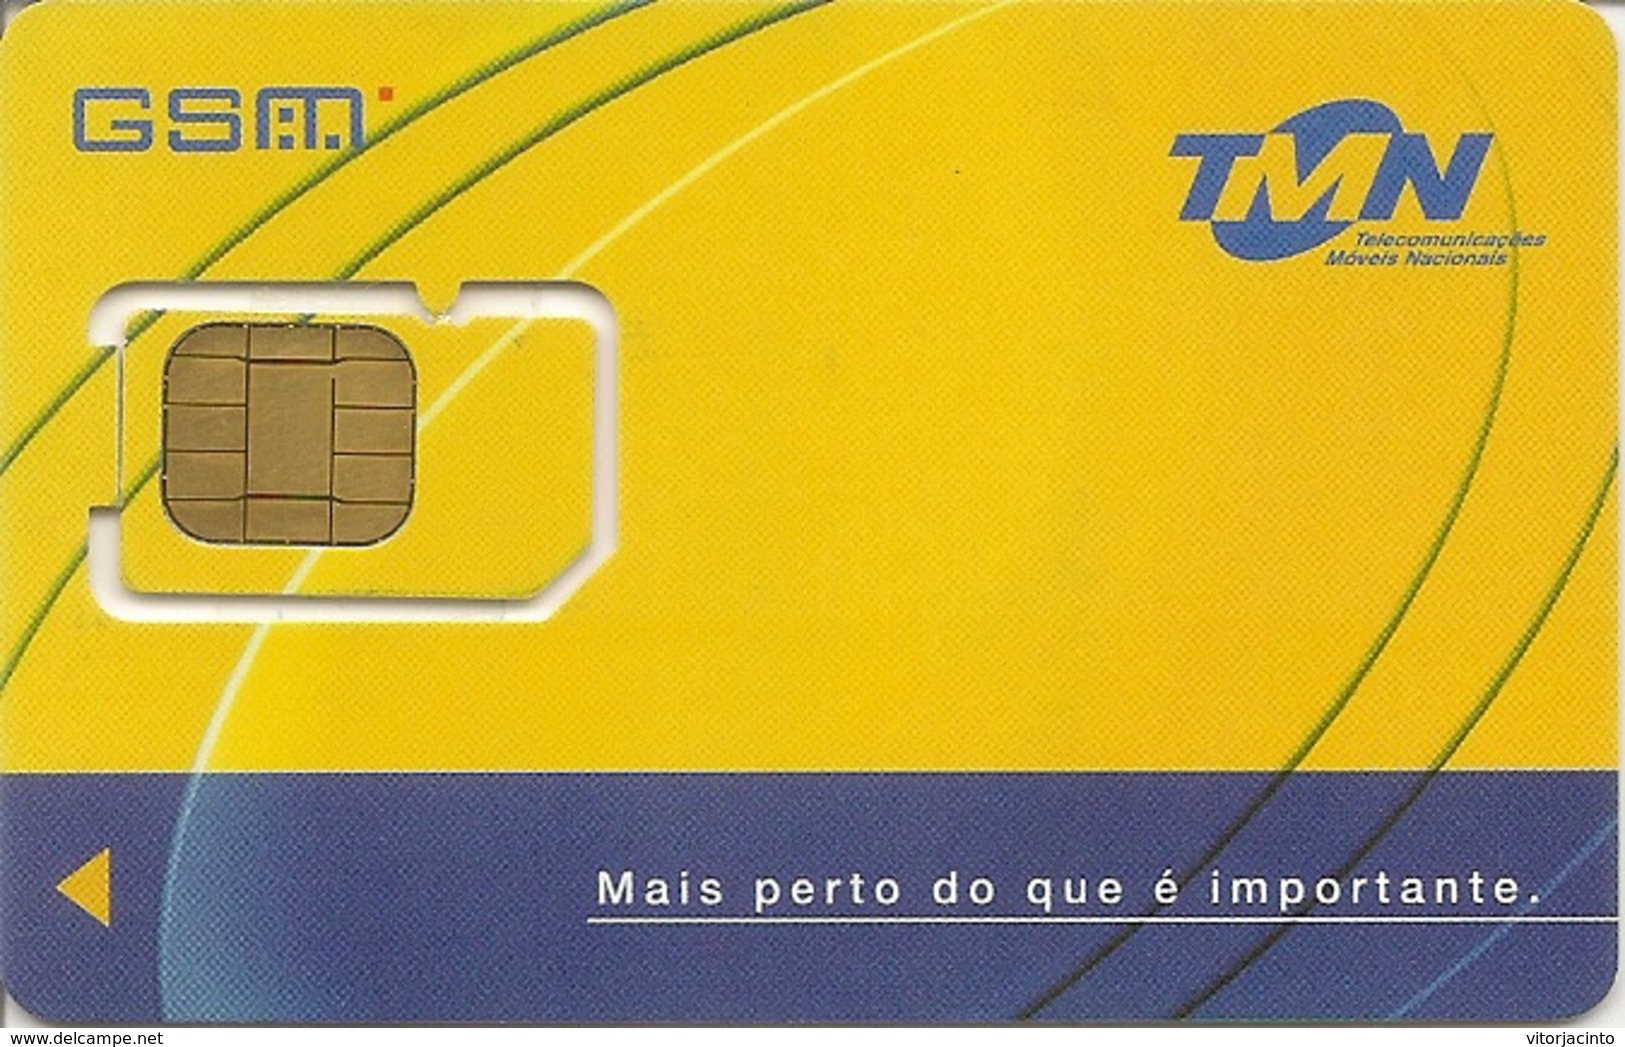 Mobile Phonecard - TMN GSM Mais Perto Do Que é Importante - Portugal - Portugal